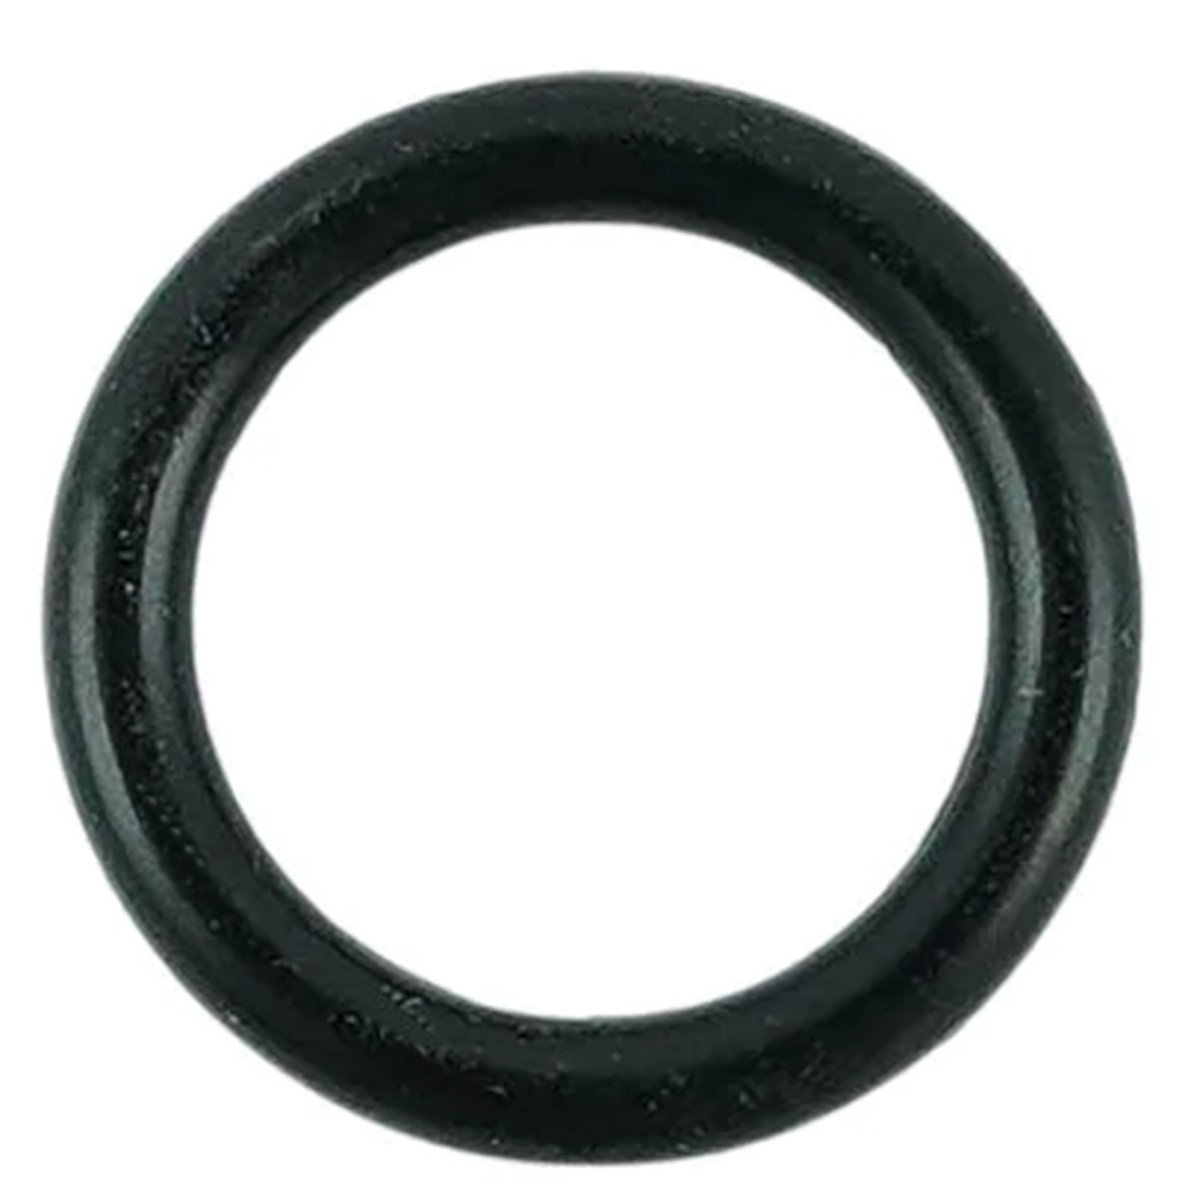 O-ring 9.80 x 2.40 mm / LS MT3.35 / LS MT3.40 / LS XJ25 / S801010011 / 40029194